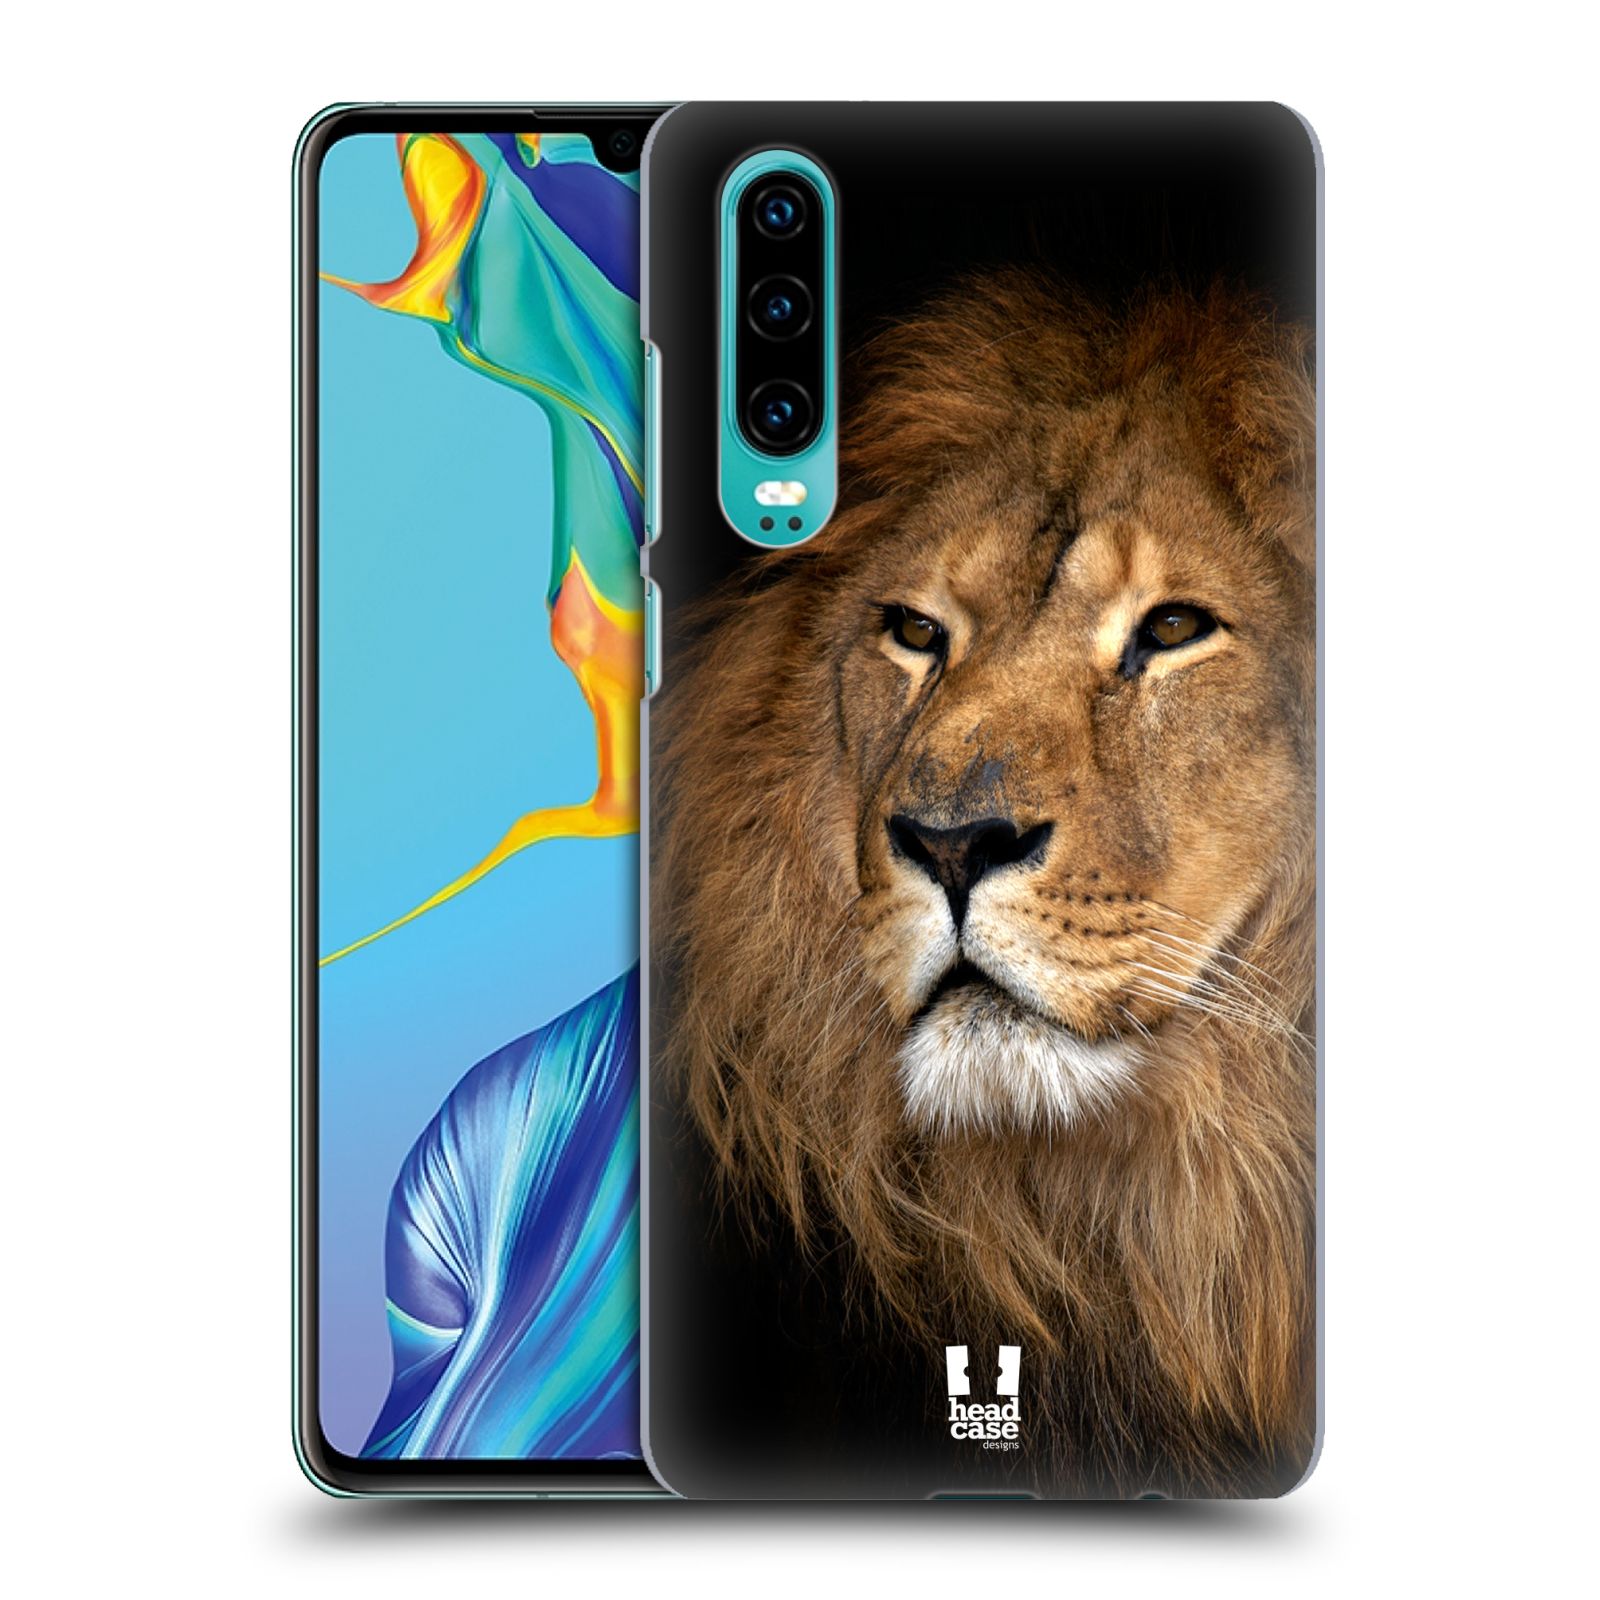 Zadní obal pro mobil Huawei P30 - HEAD CASE - Svět zvířat král zvířat Lev